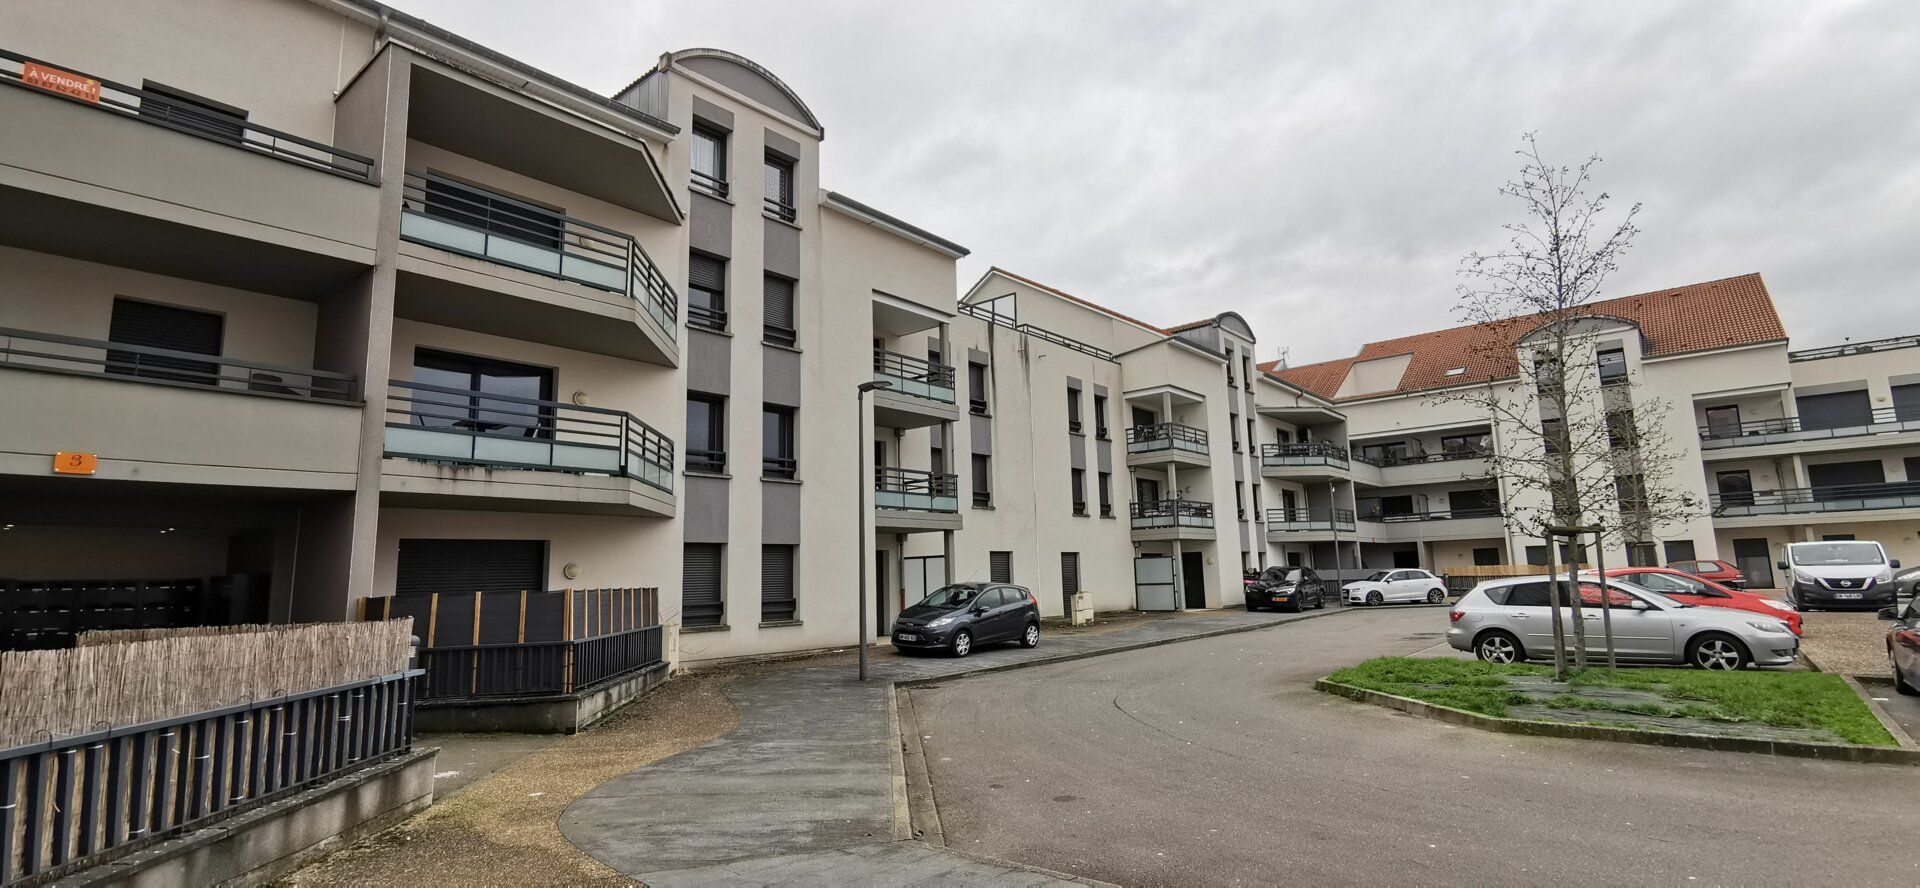 Appartement à vendre 2 34m2 à Maizières-lès-Metz vignette-8